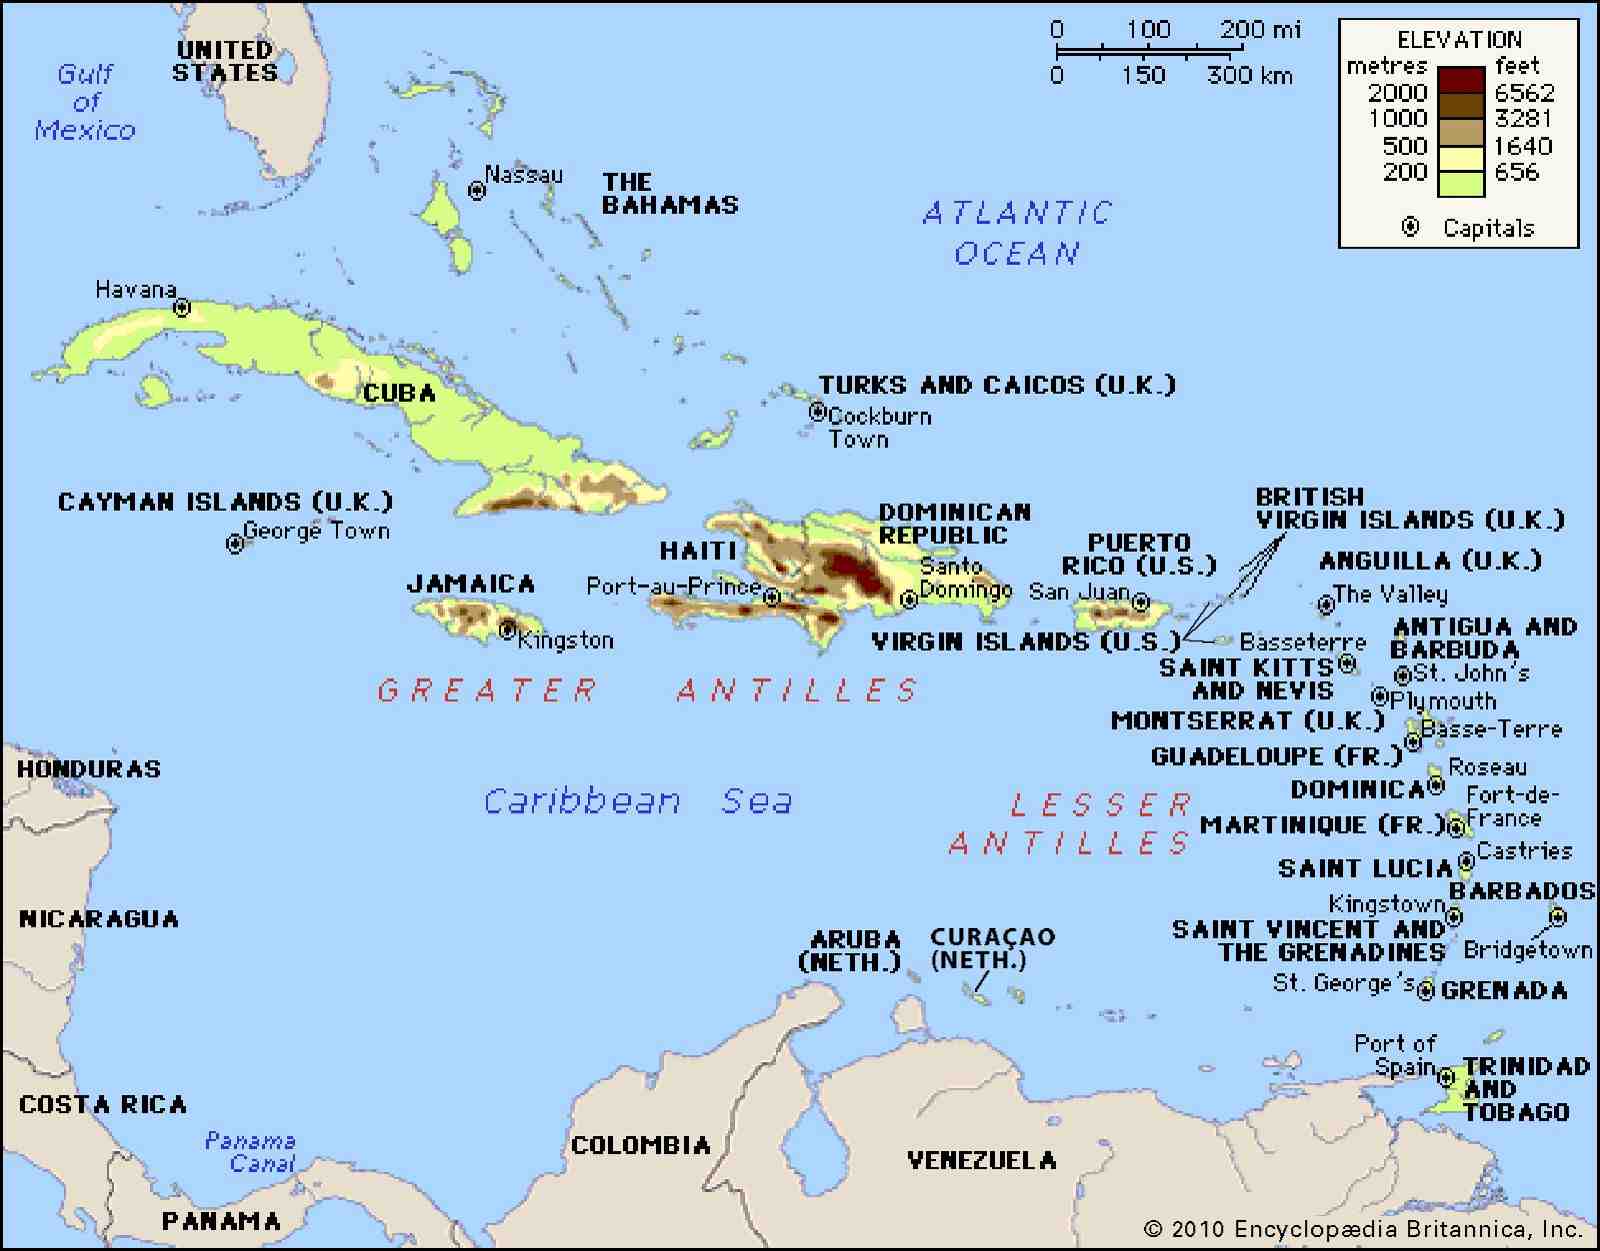 Quels pays font partie des Antilles ?